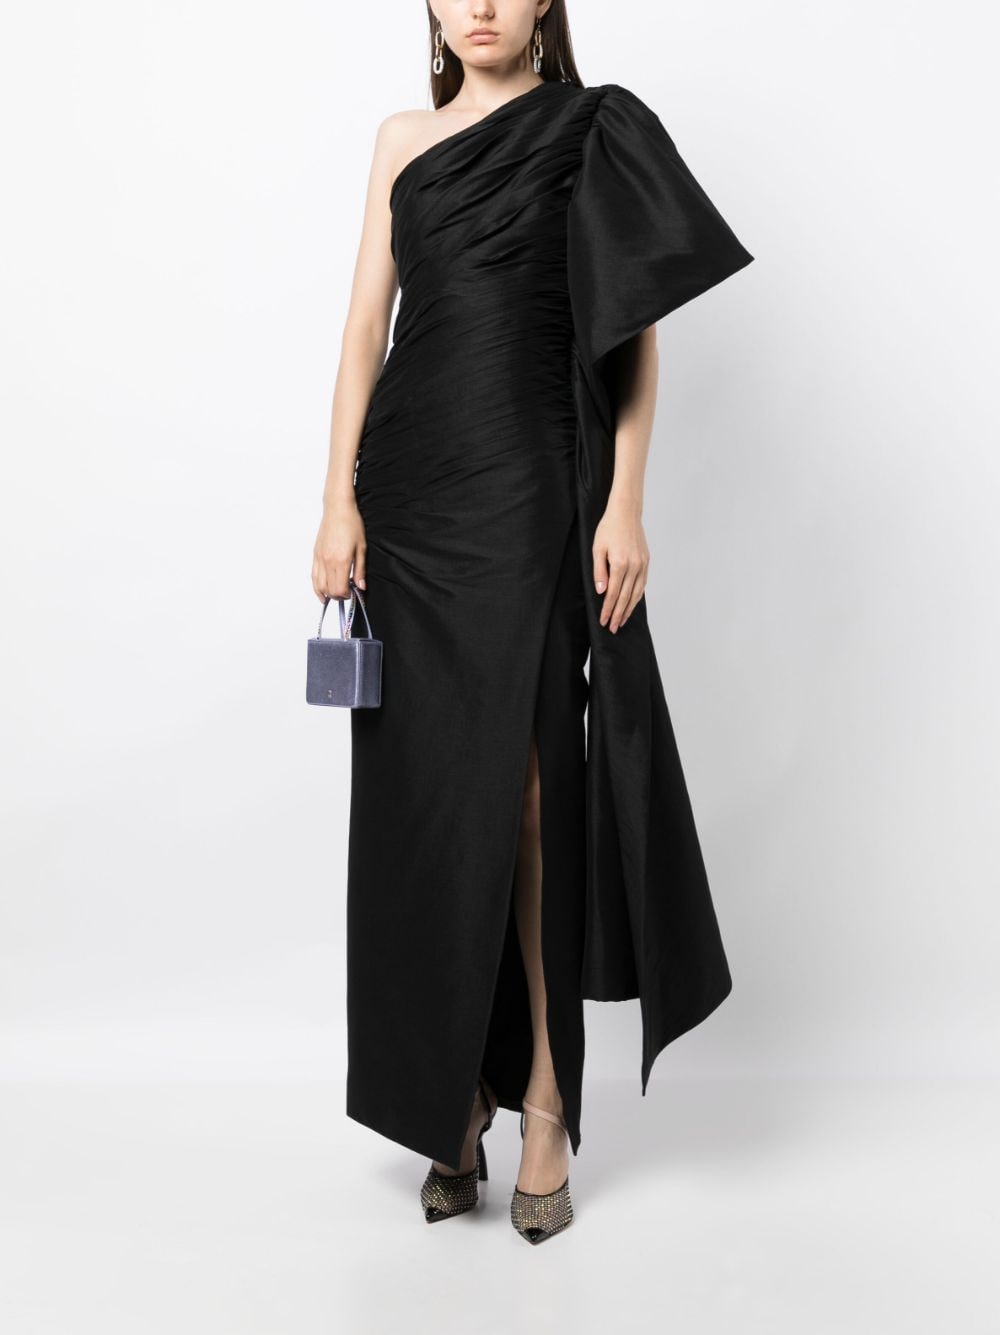 Image 2 of Rachel Gilbert Marji one-shoulder gown dress